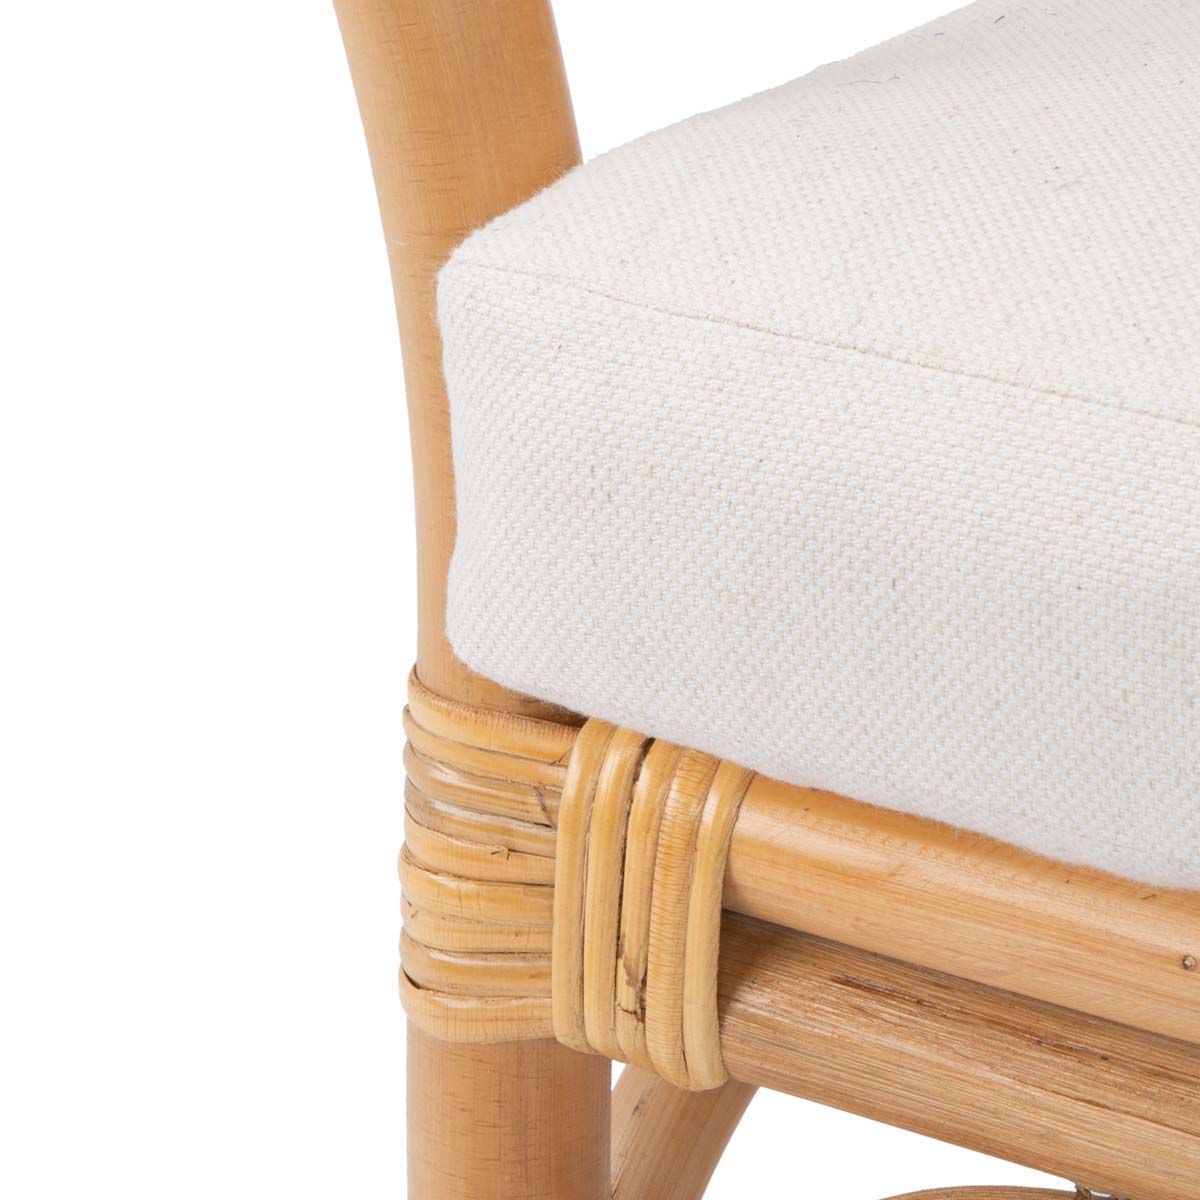 Safavieh Dustin Rattan Accent Chair W/ Cushion , ACH6517 - Natural/White